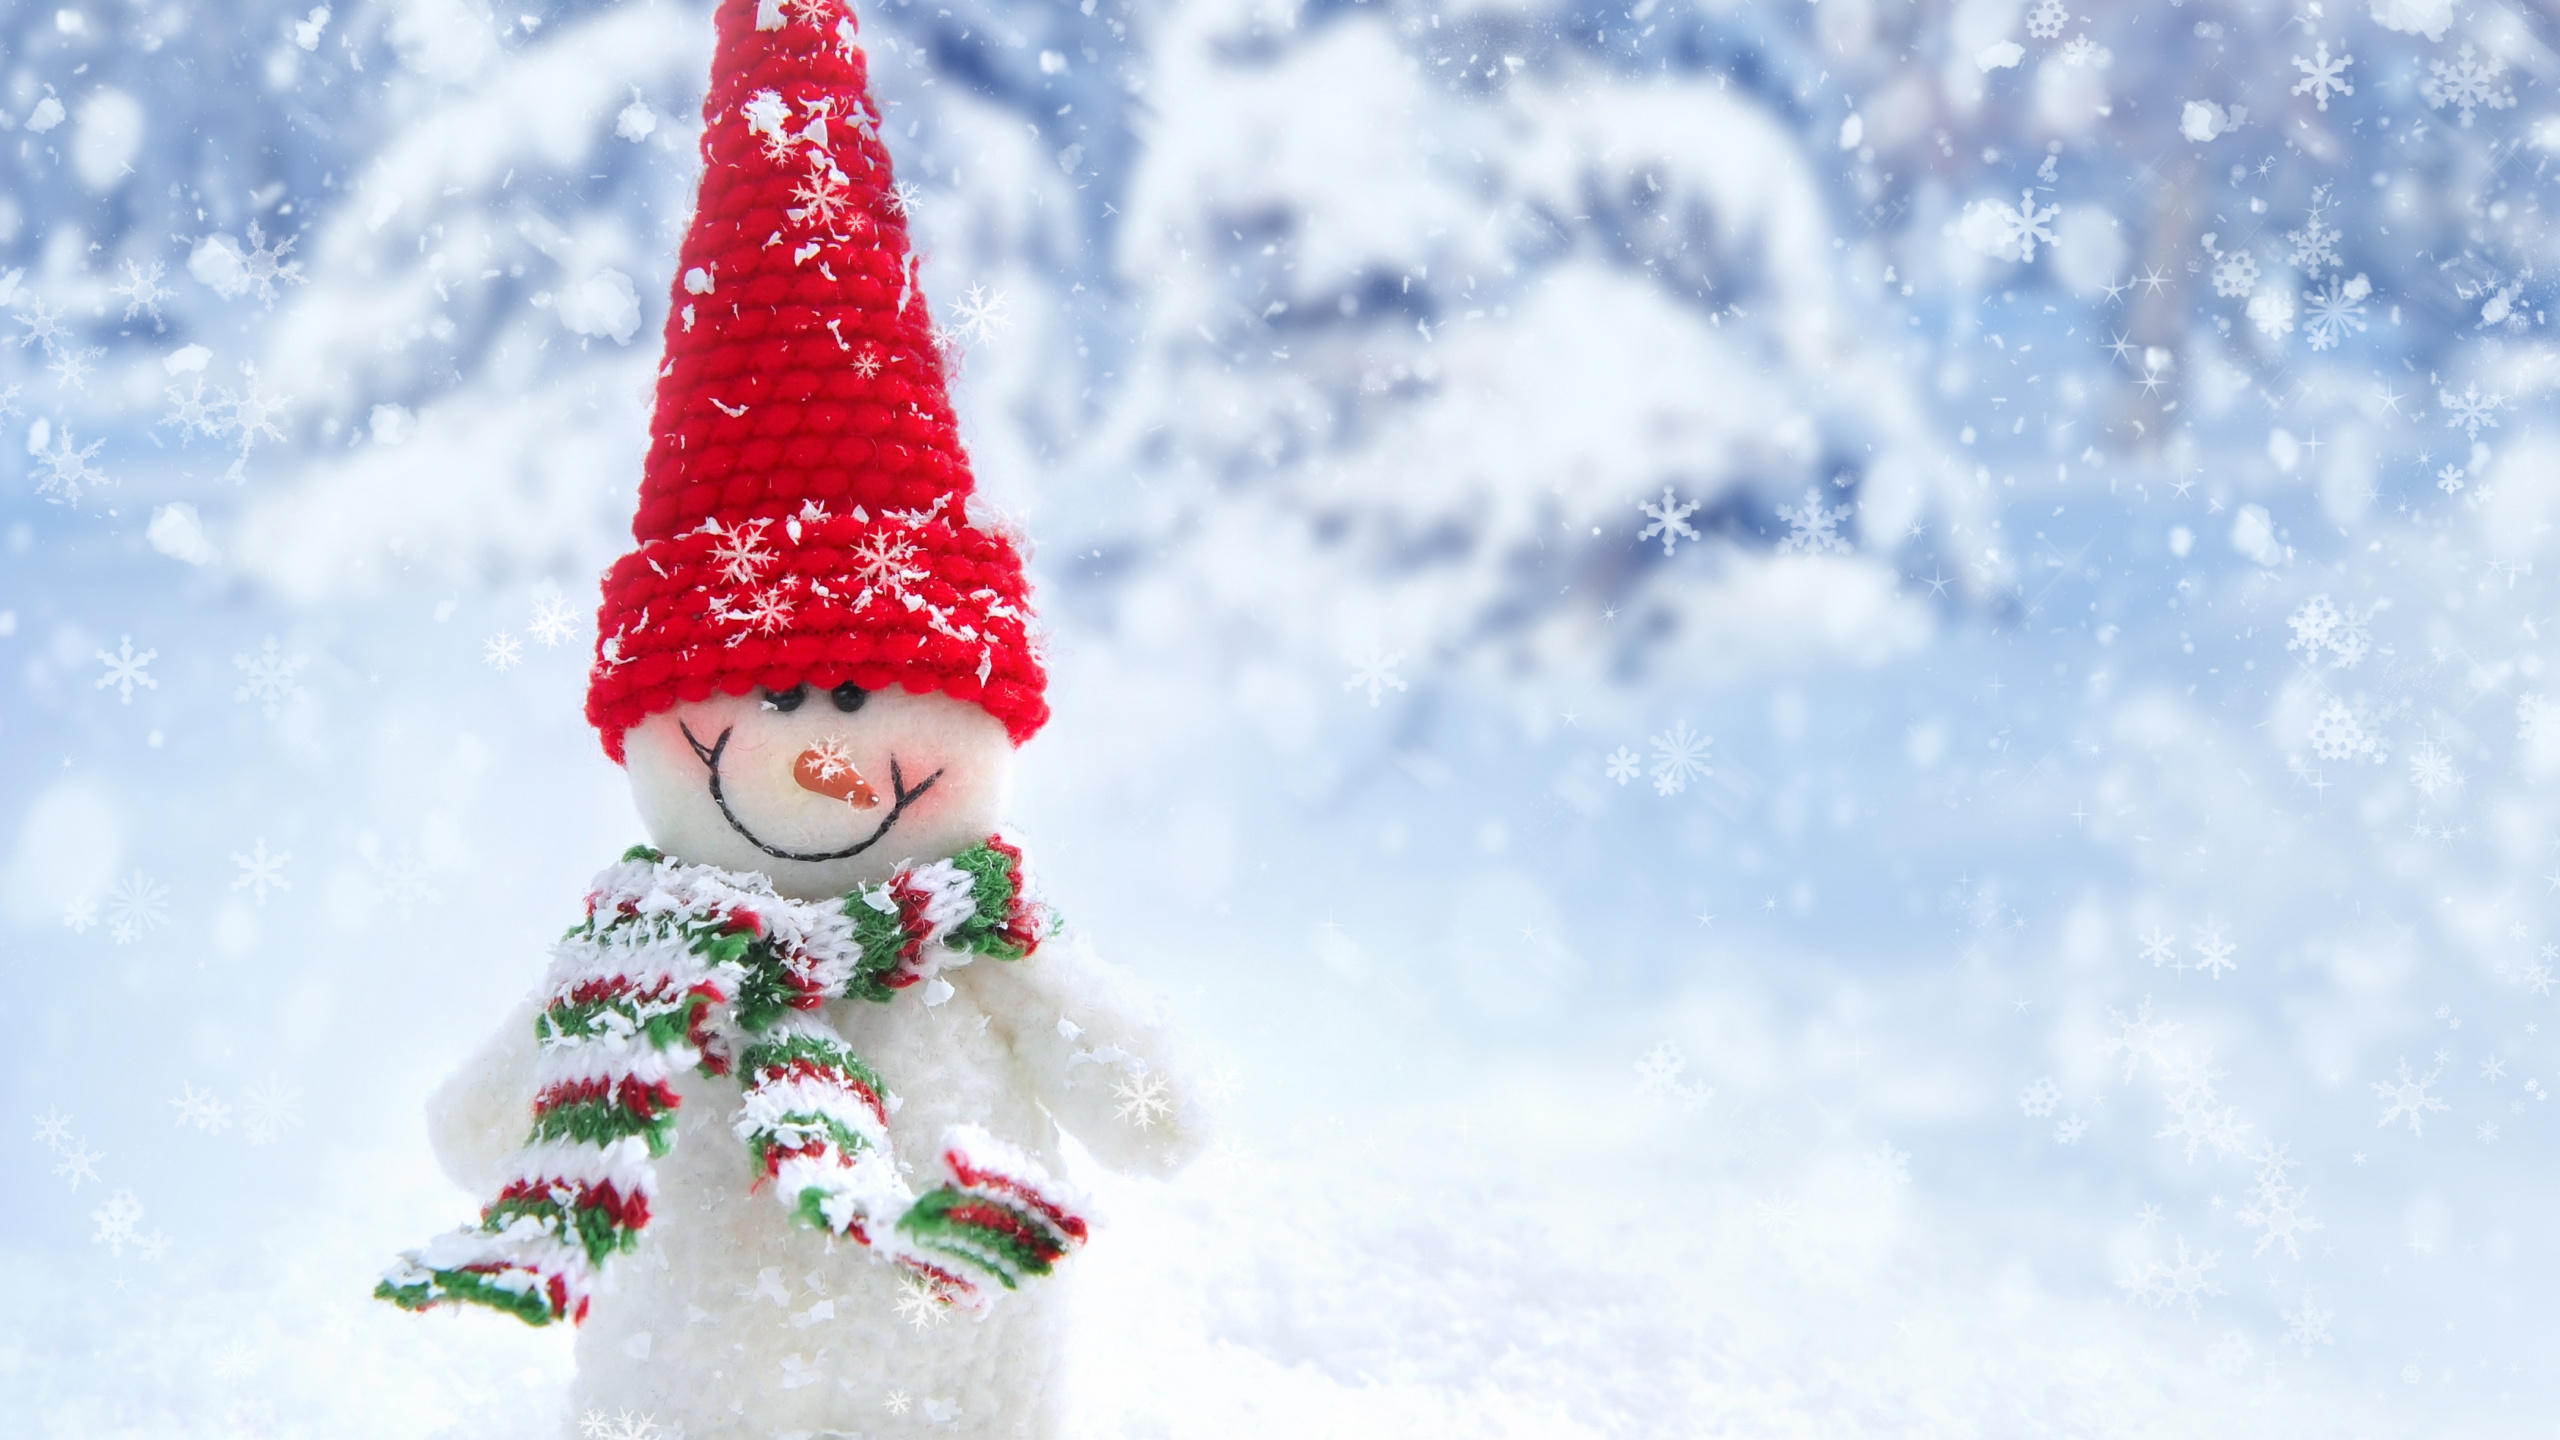 雪人, 冬天, 圣诞树, 圣诞节, 圣诞节的装饰品 壁纸 2560x1440 允许